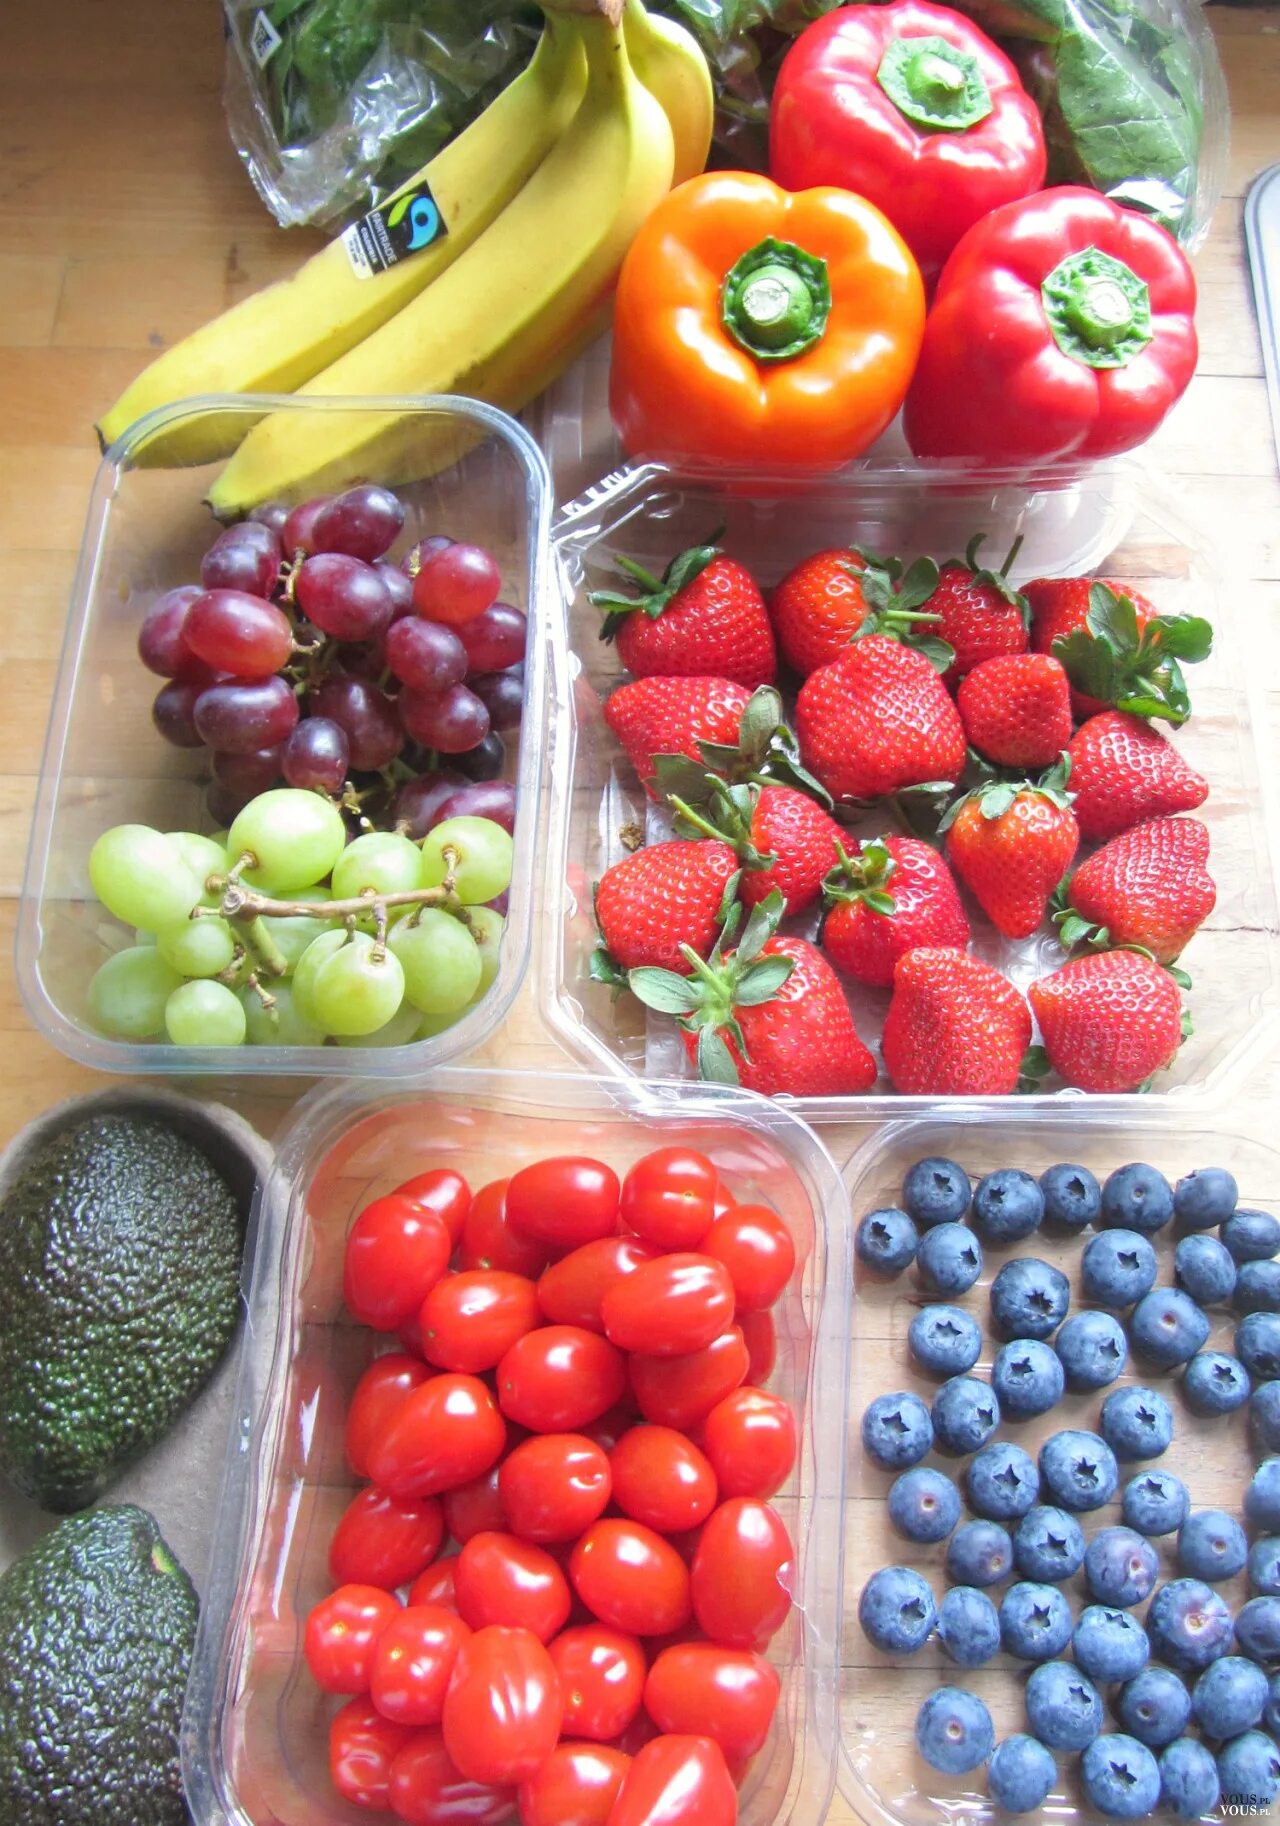 60 килограмм фруктов. Фруктовый разгрузочный день. Несладкие фрукты. Разгрузочный день на фруктах и овощах. Овощи ПП.